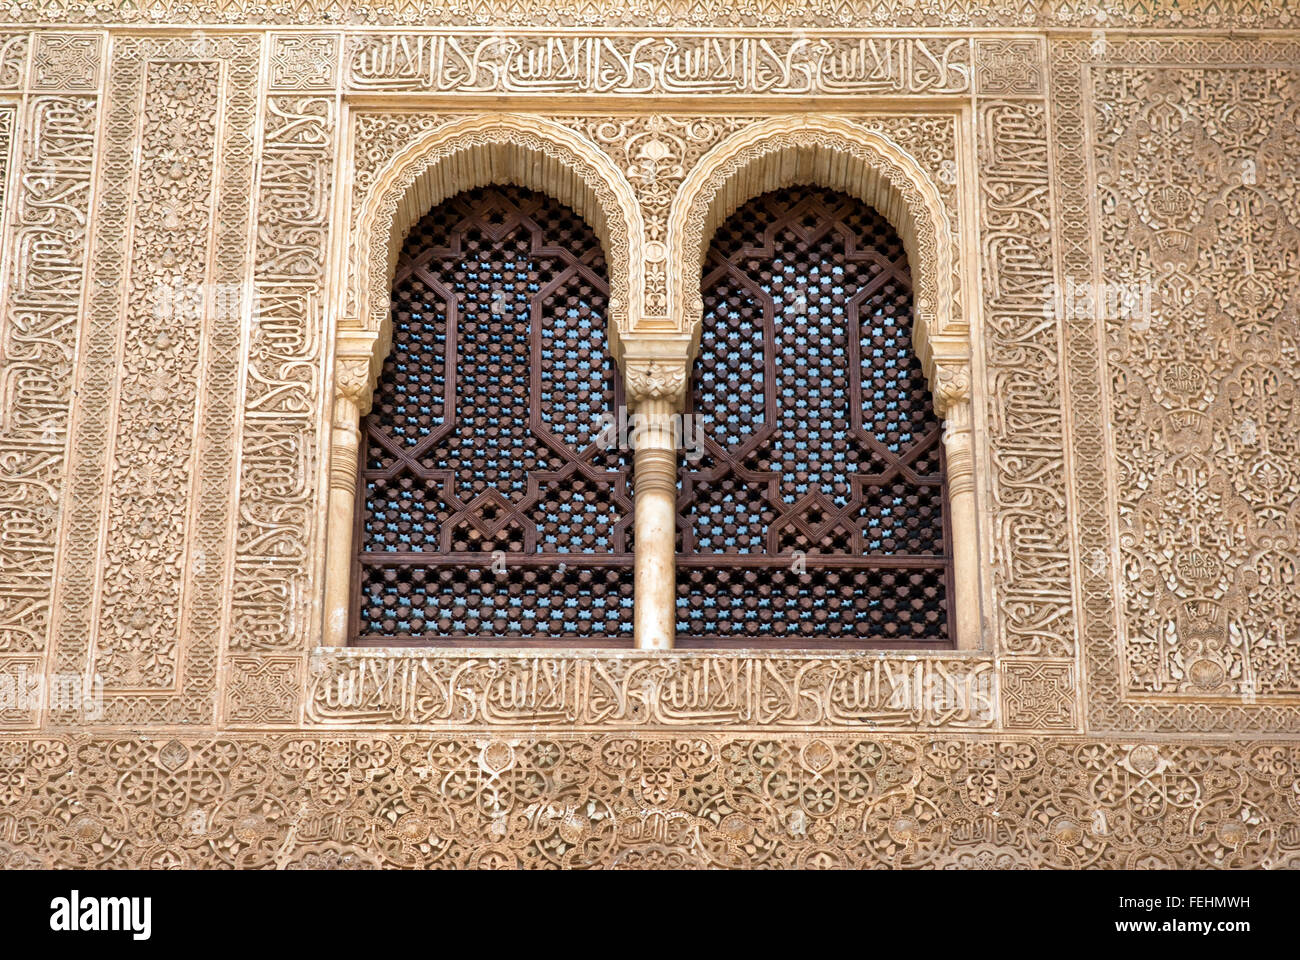 Arabesque islamique dans Windows, à l'Alhambra, Grenade Banque D'Images